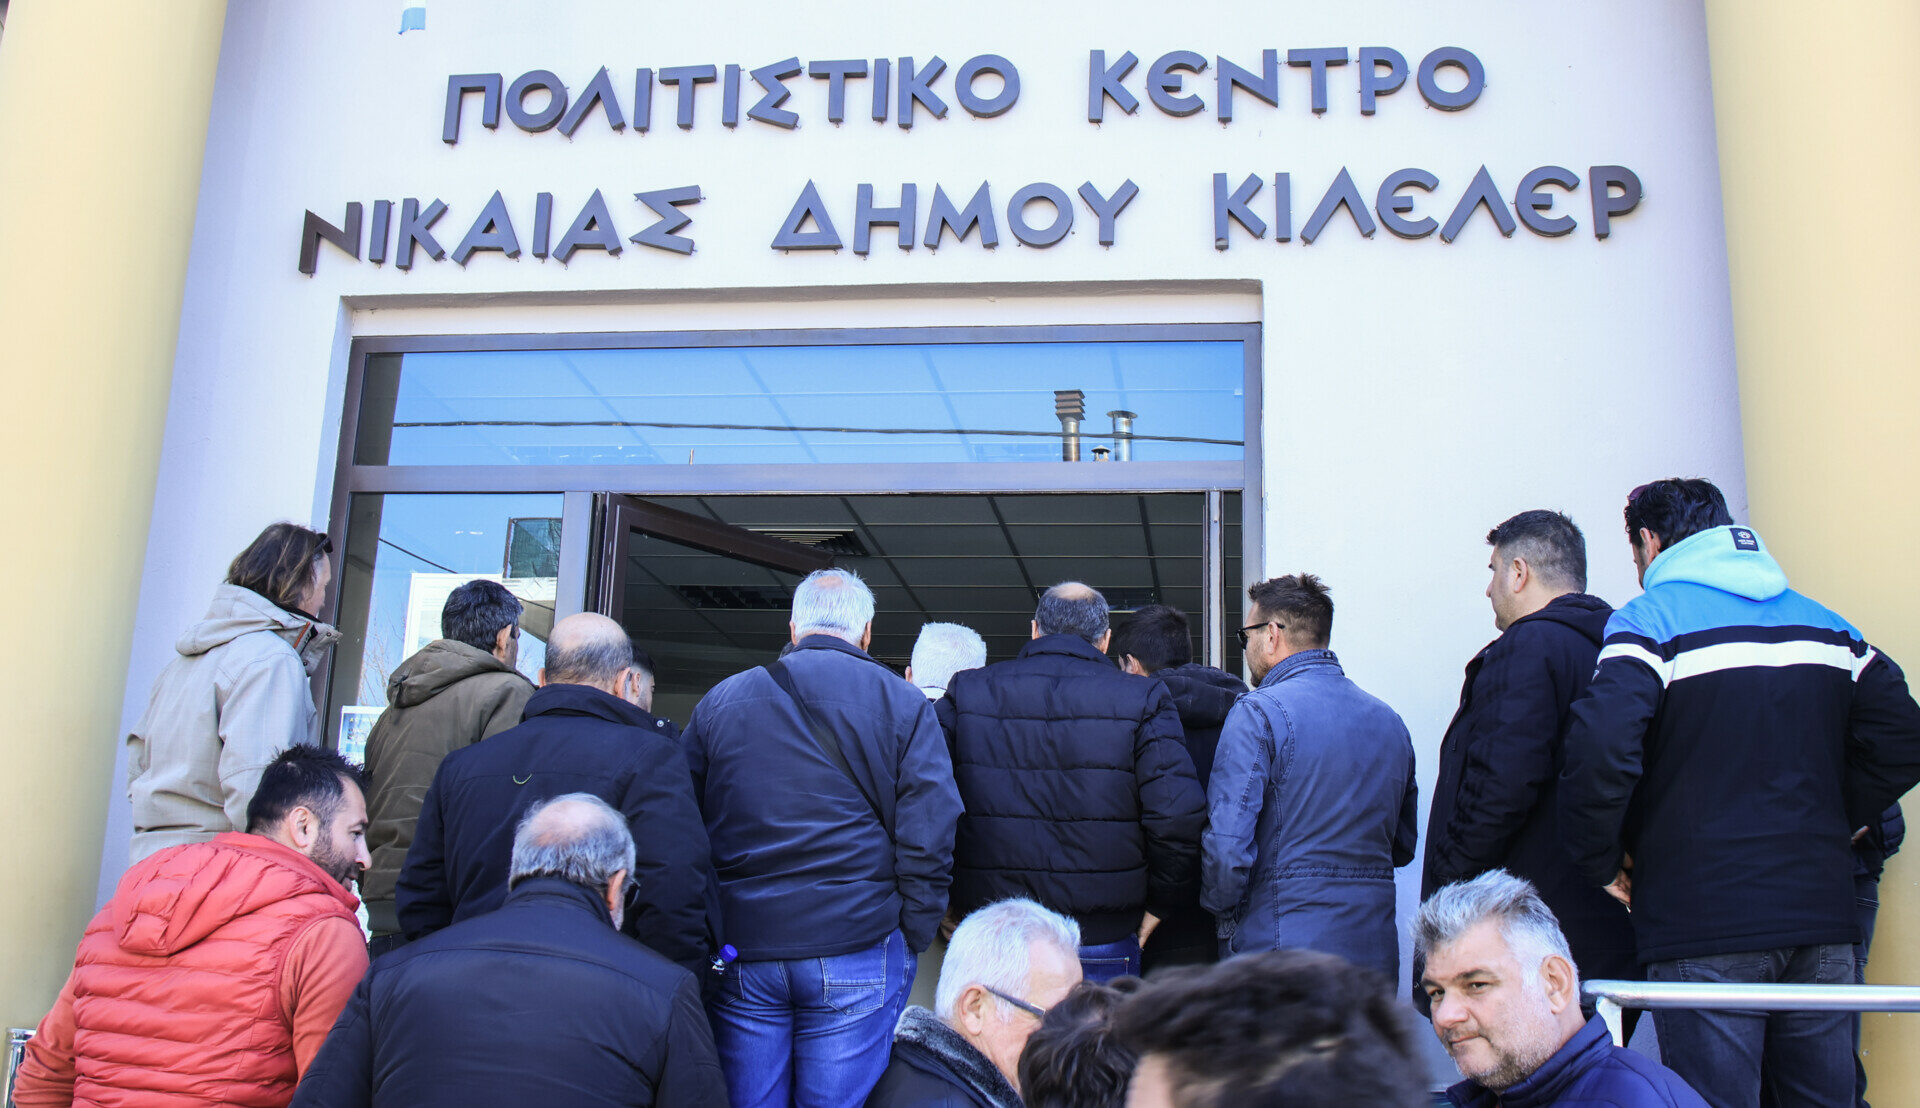 Συνεδρίαση των εκπροσώπων των αγροτικών μπλόκων από όλη την Ελλάδα, προκειμένου να αποφασίσουν τις επόμενες κινήσεις τους, μετά και τα μέτρα στήριξης που ανακοίνωσε ο πρωθυπουργός, στη Νίκαια Λάρισας © EUROKINISSI